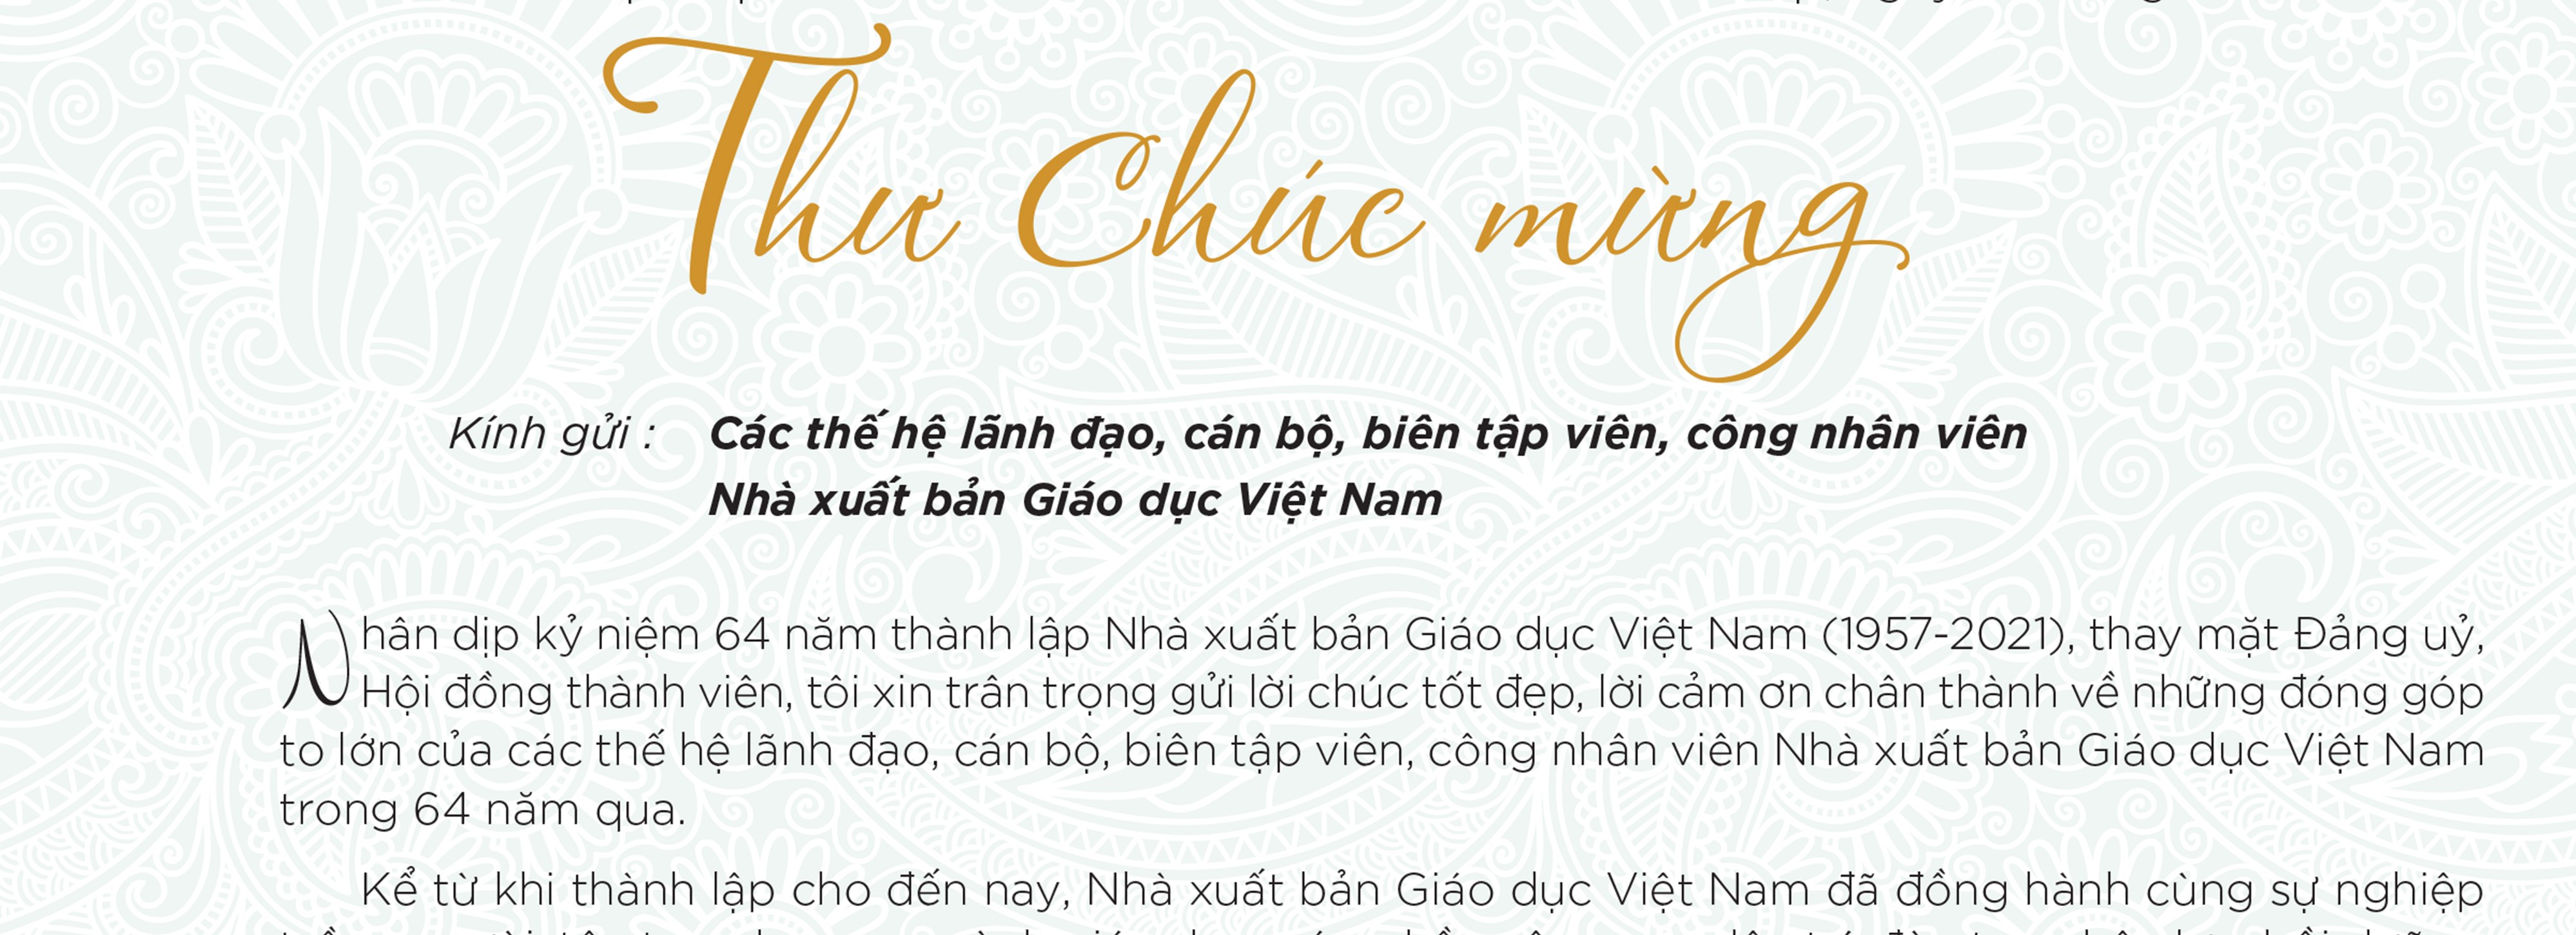 Thư chúc mừng nhân kỷ niệm 64 năm thành lập Nhà xuất bản Giáo dục Việt Nam